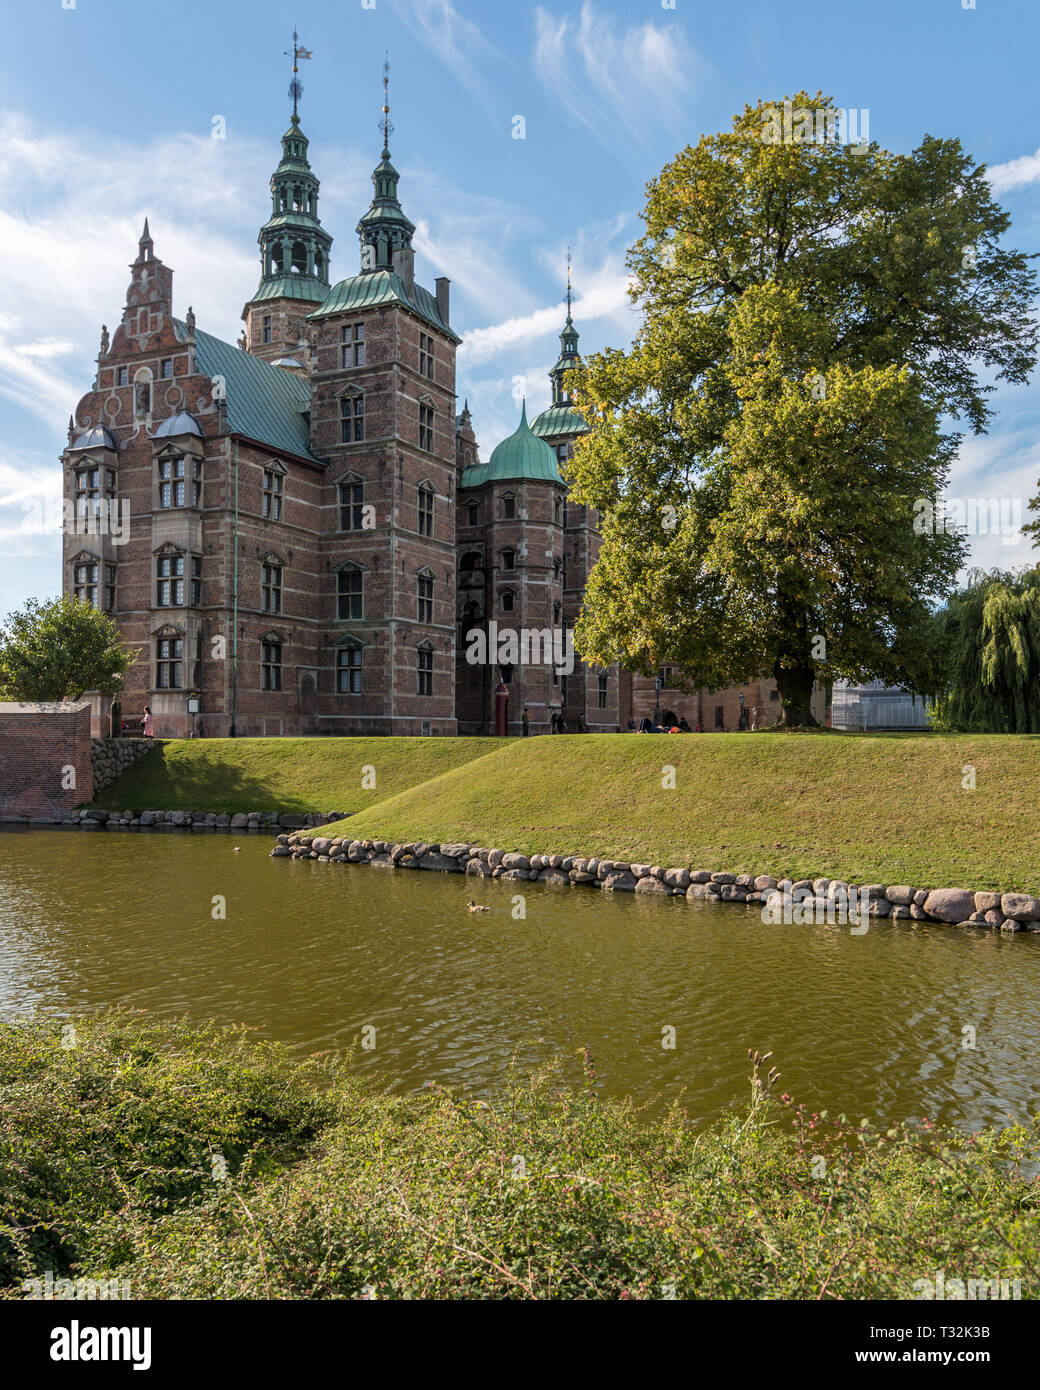 Ein Blick auf die Christlichen IV Schloss Rosenborg gebaut in einem niederländischen Renaissancestil mit seinem hohen, spire - überstieg, Türme & rotes Mauerwerk mit Sandstein Inlays. Stockfoto